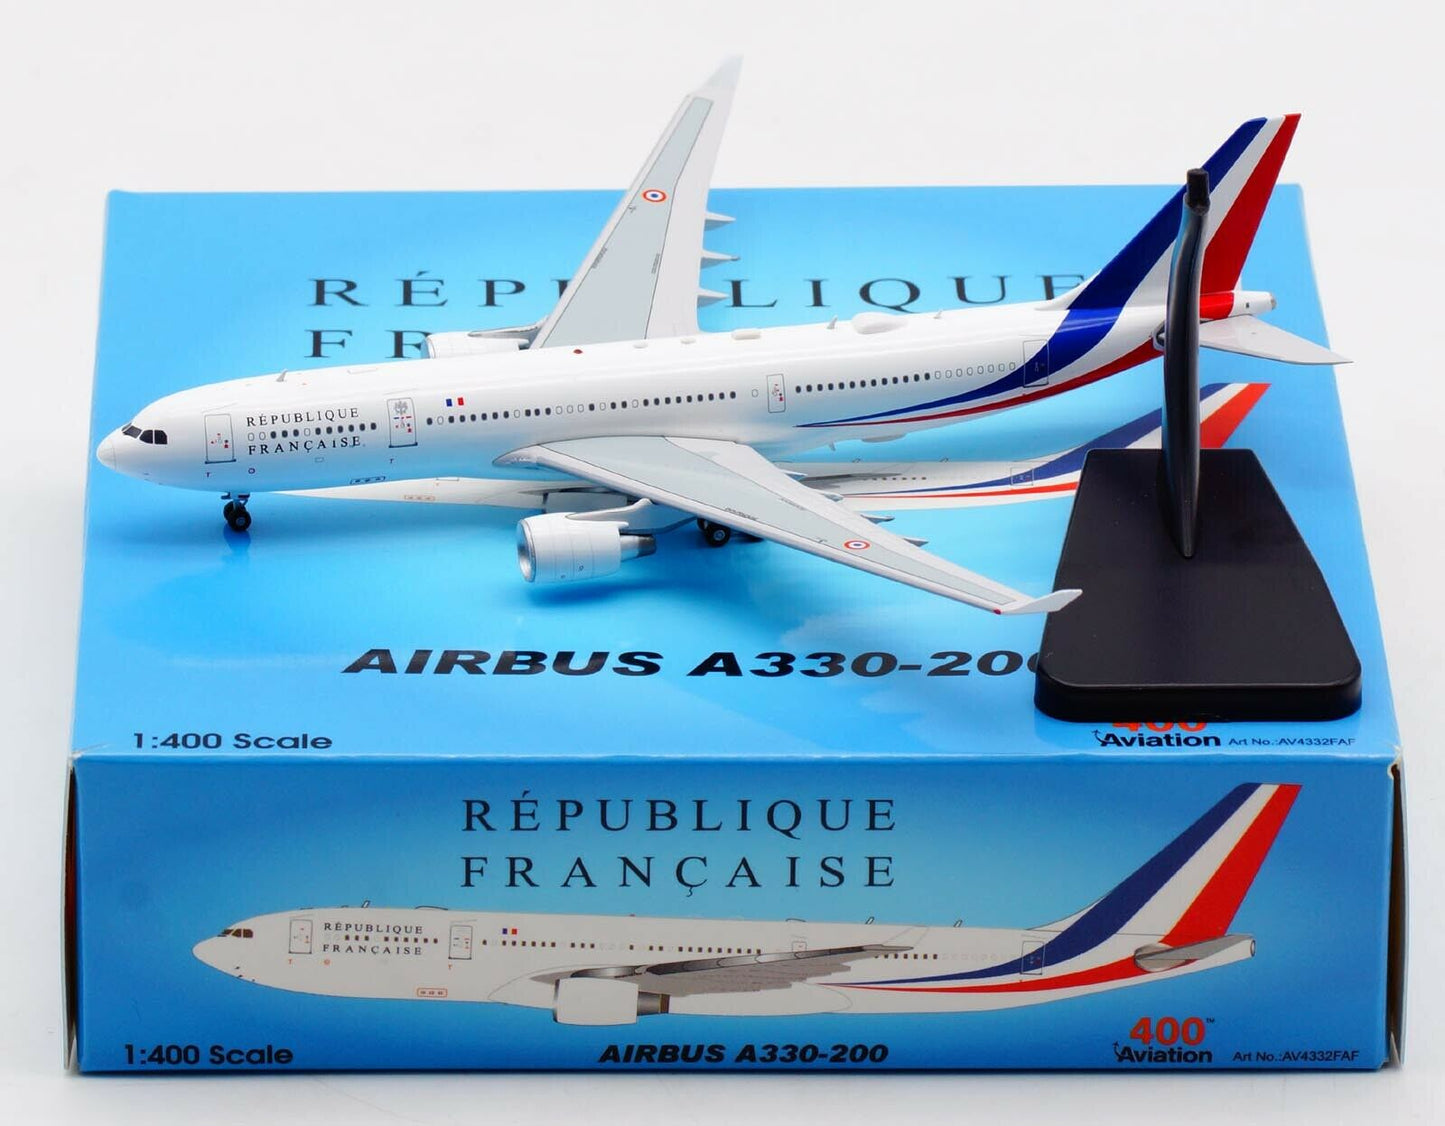 1:400 Aviation400 Republique Française French Air Force Airbus A330-223 F-RARF AV4332FAF